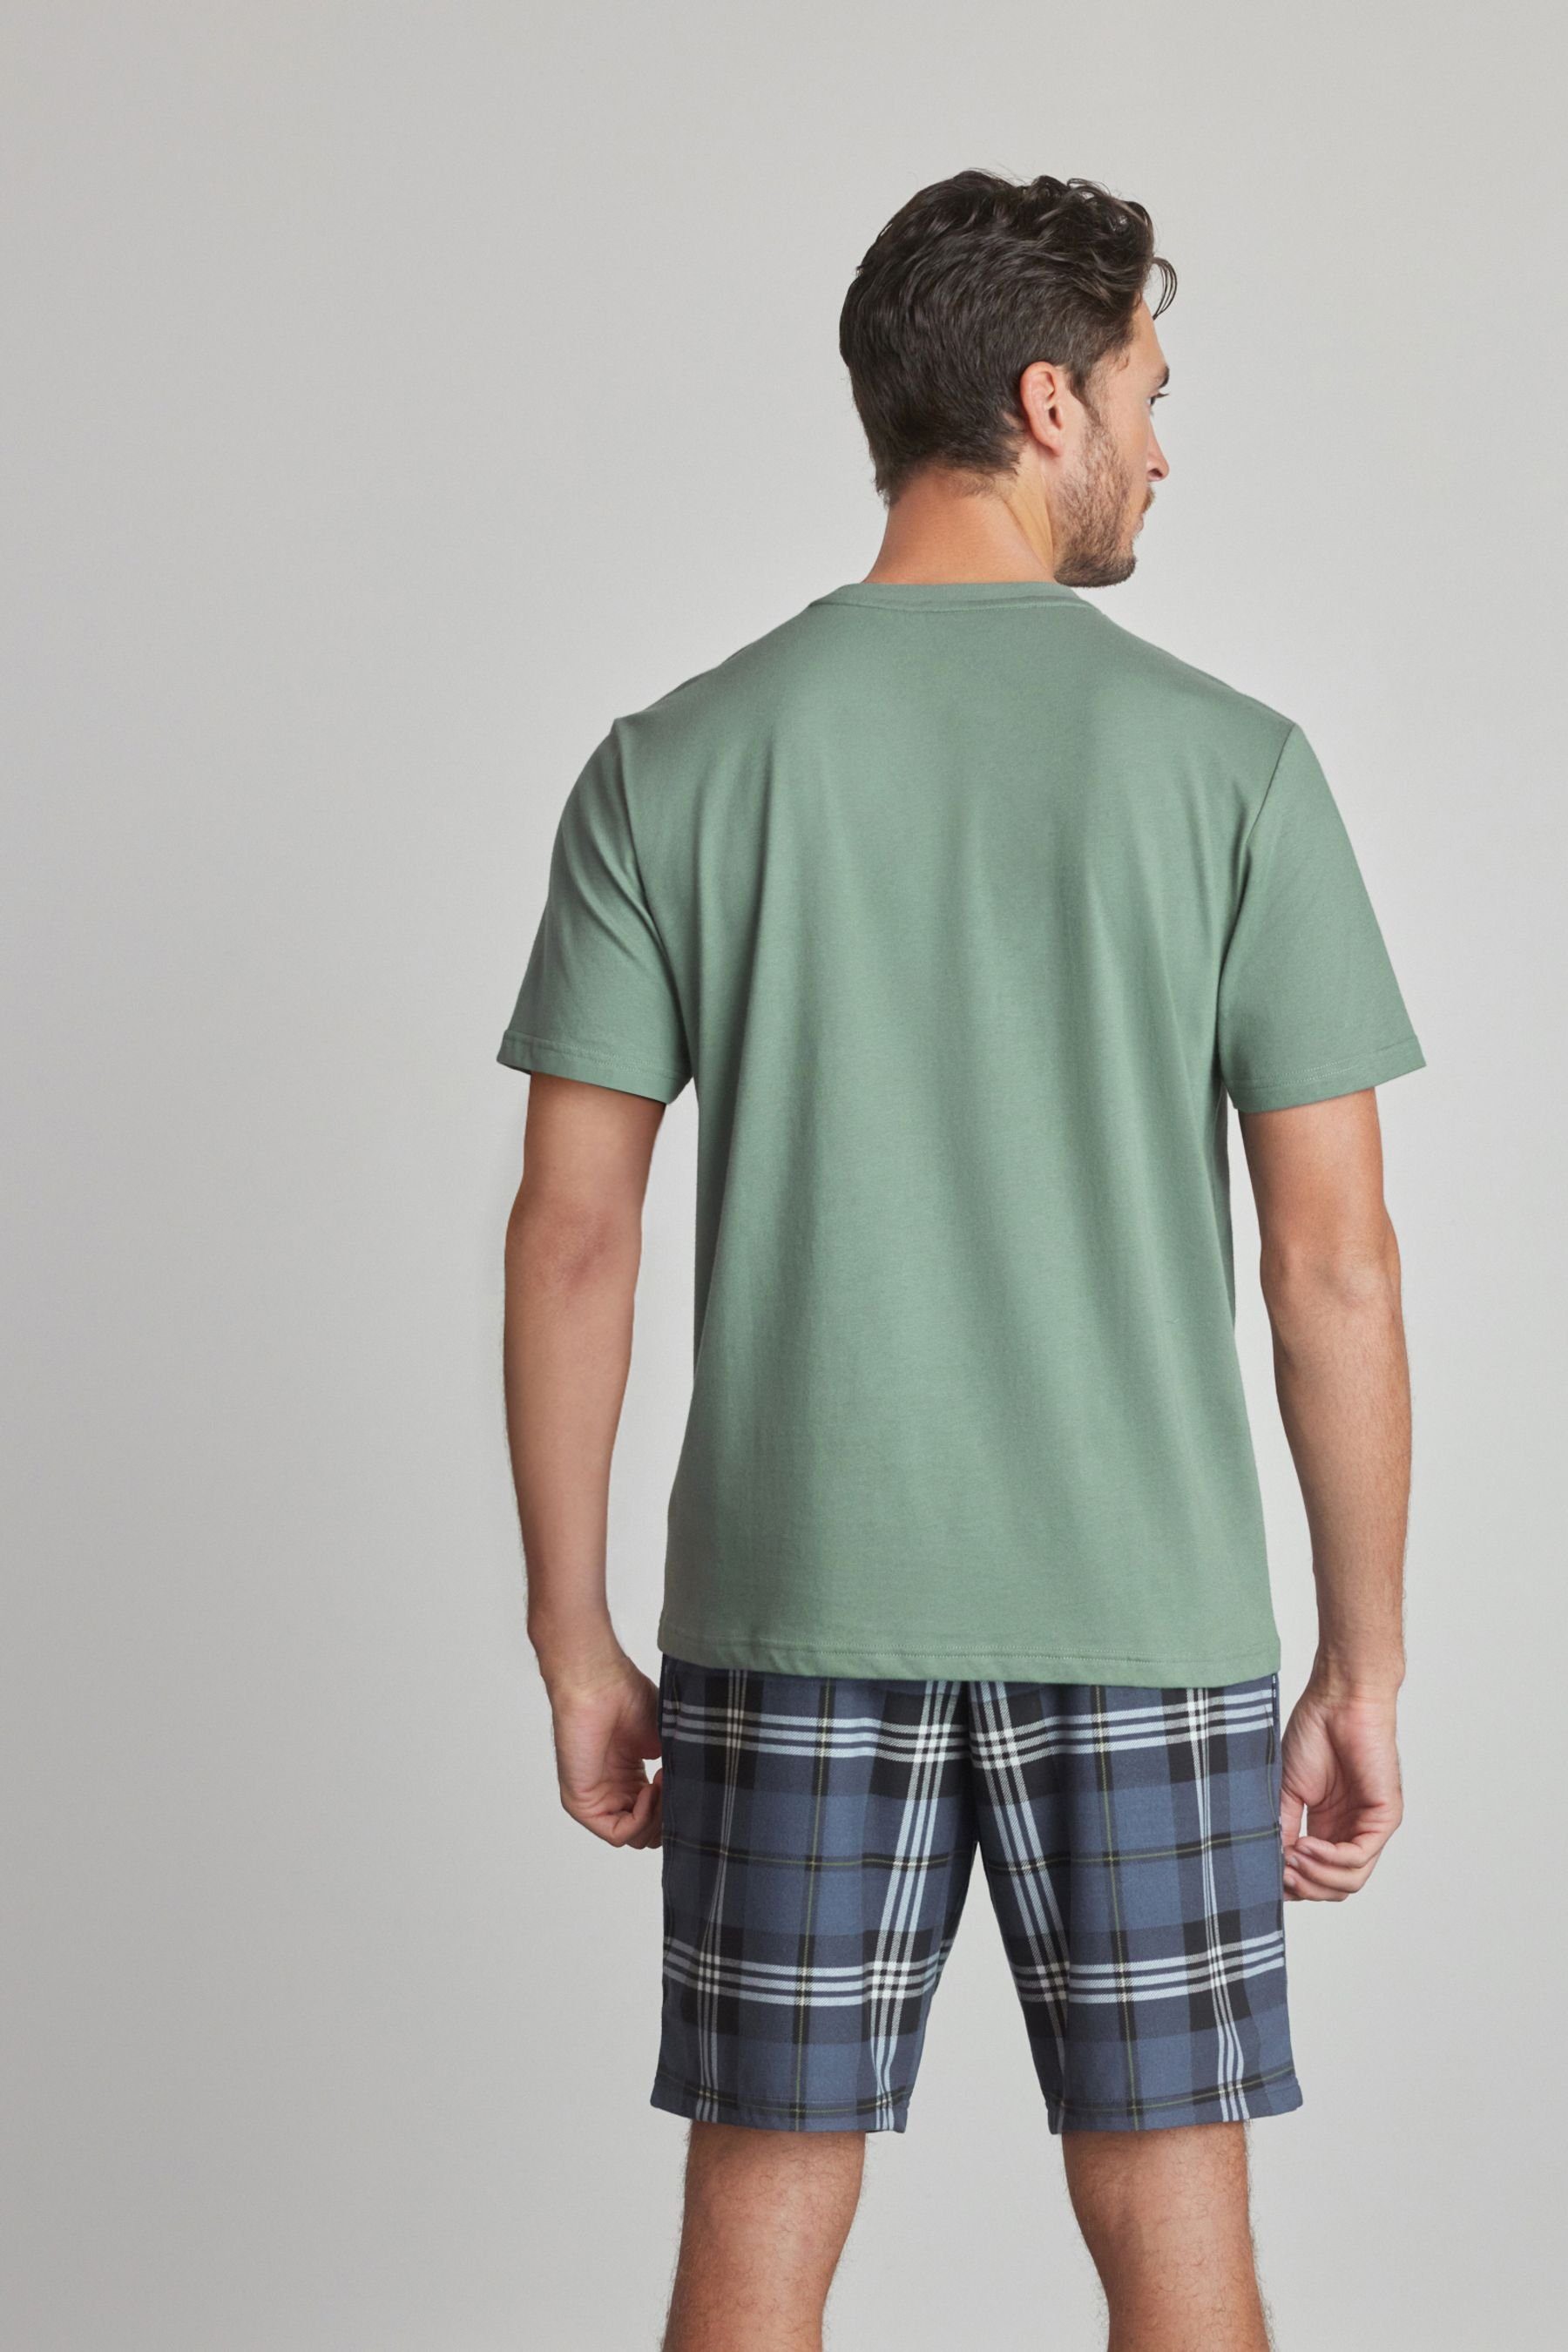 Pyjama Next tlg) Kuscheliger Check mit Flex Green/Navy Motion (2 Pyjama Blue Shorts